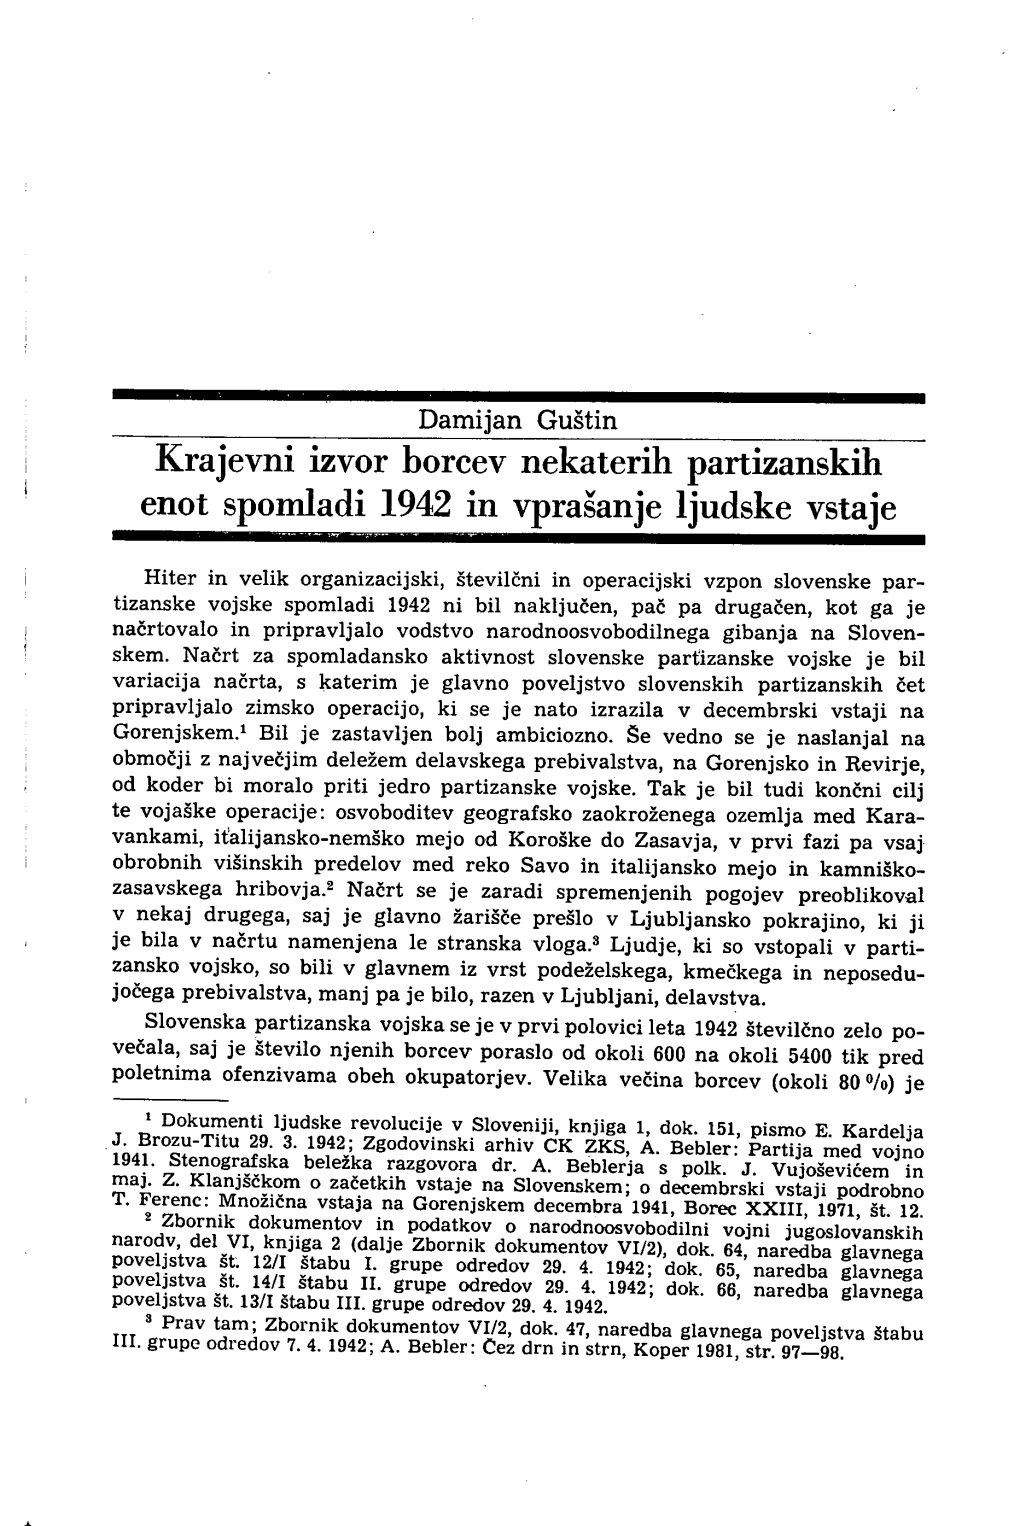 Krajevni Izvor Borcev Nekaterih Partizanskih Enot Spomladi 1942 in Vprašanje Ljudske Vstaje